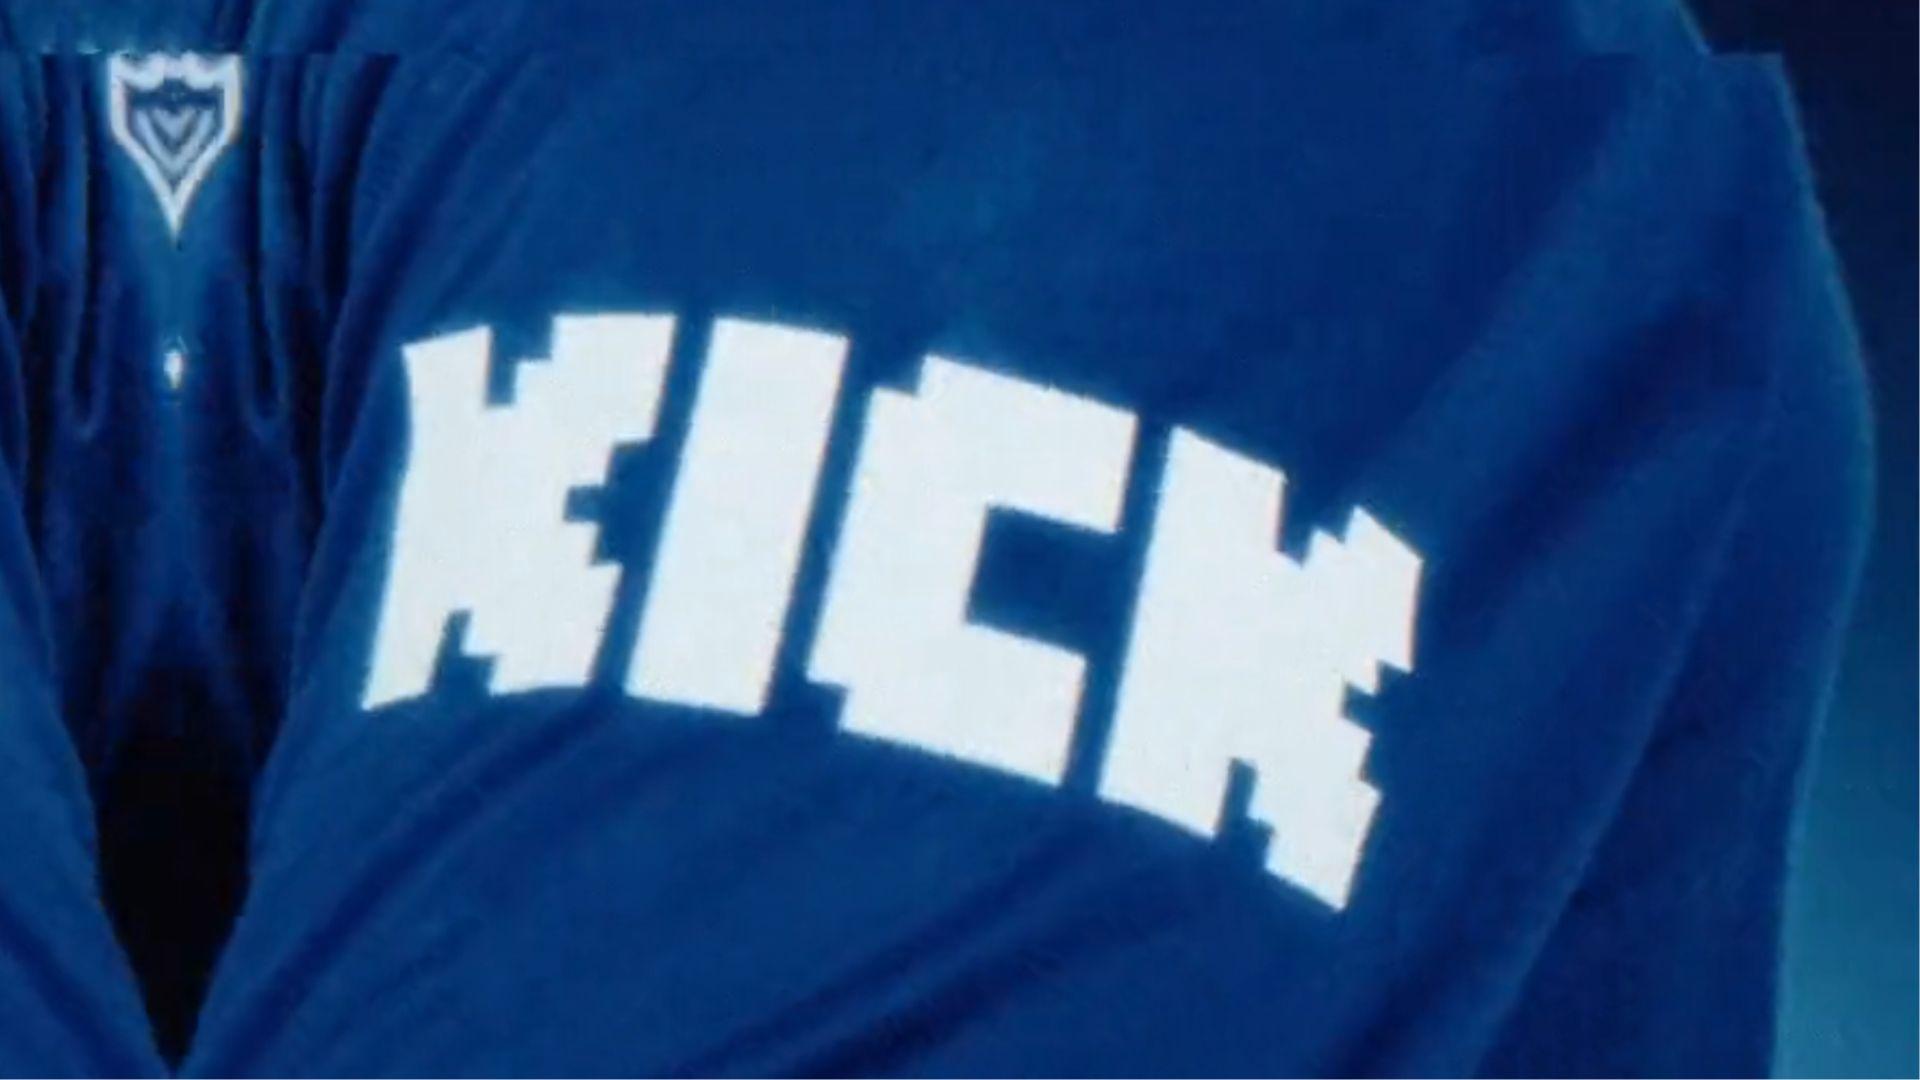 Kick logo on blue shirt pointed at camera